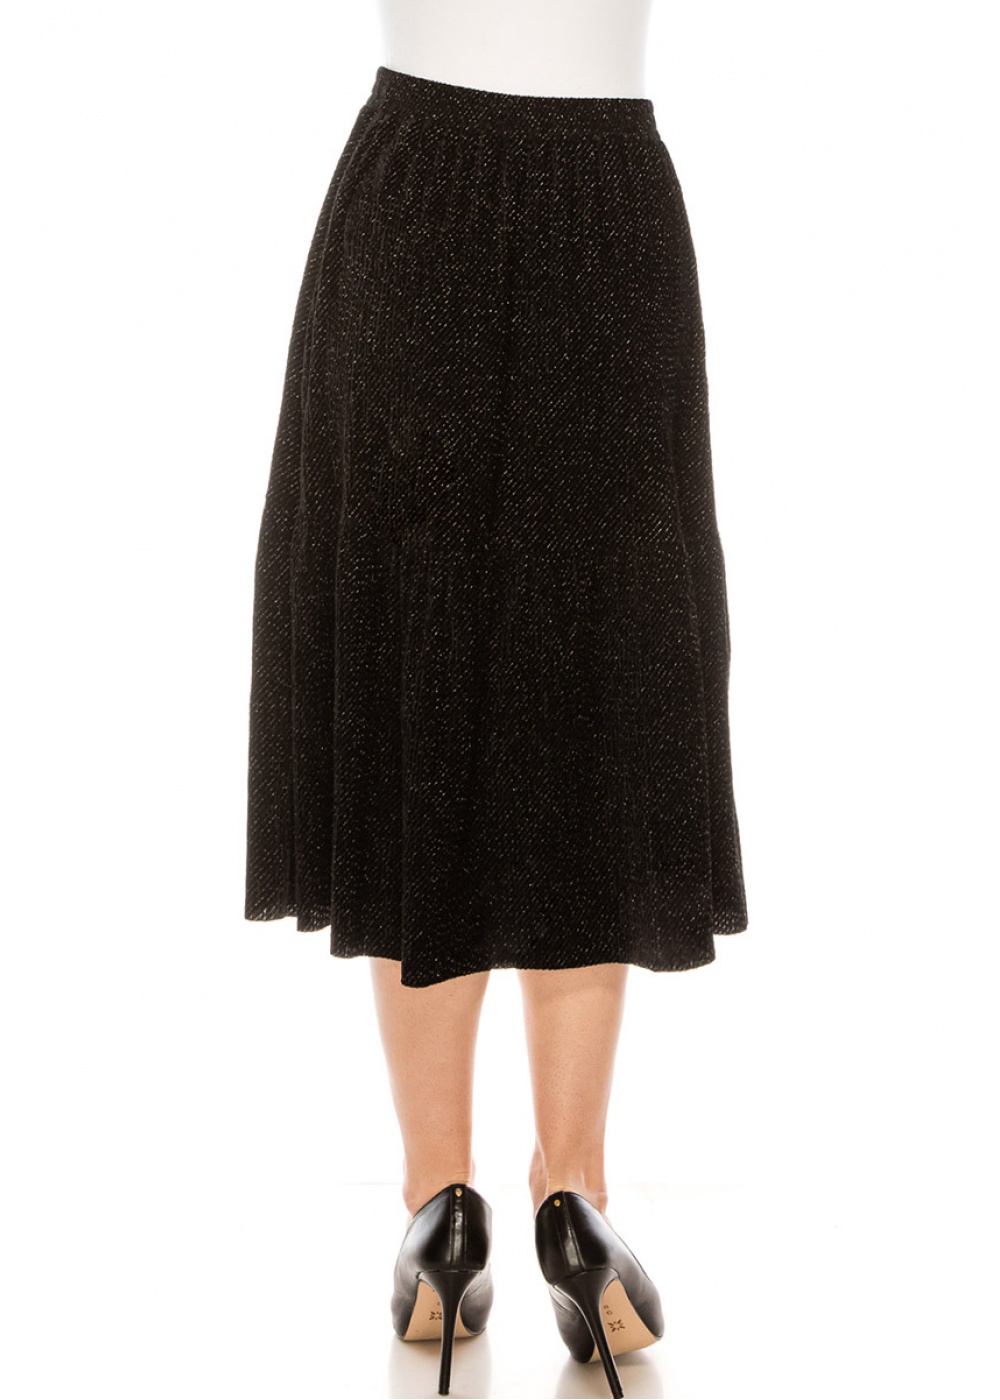 Sequin velvet midi skirt in black